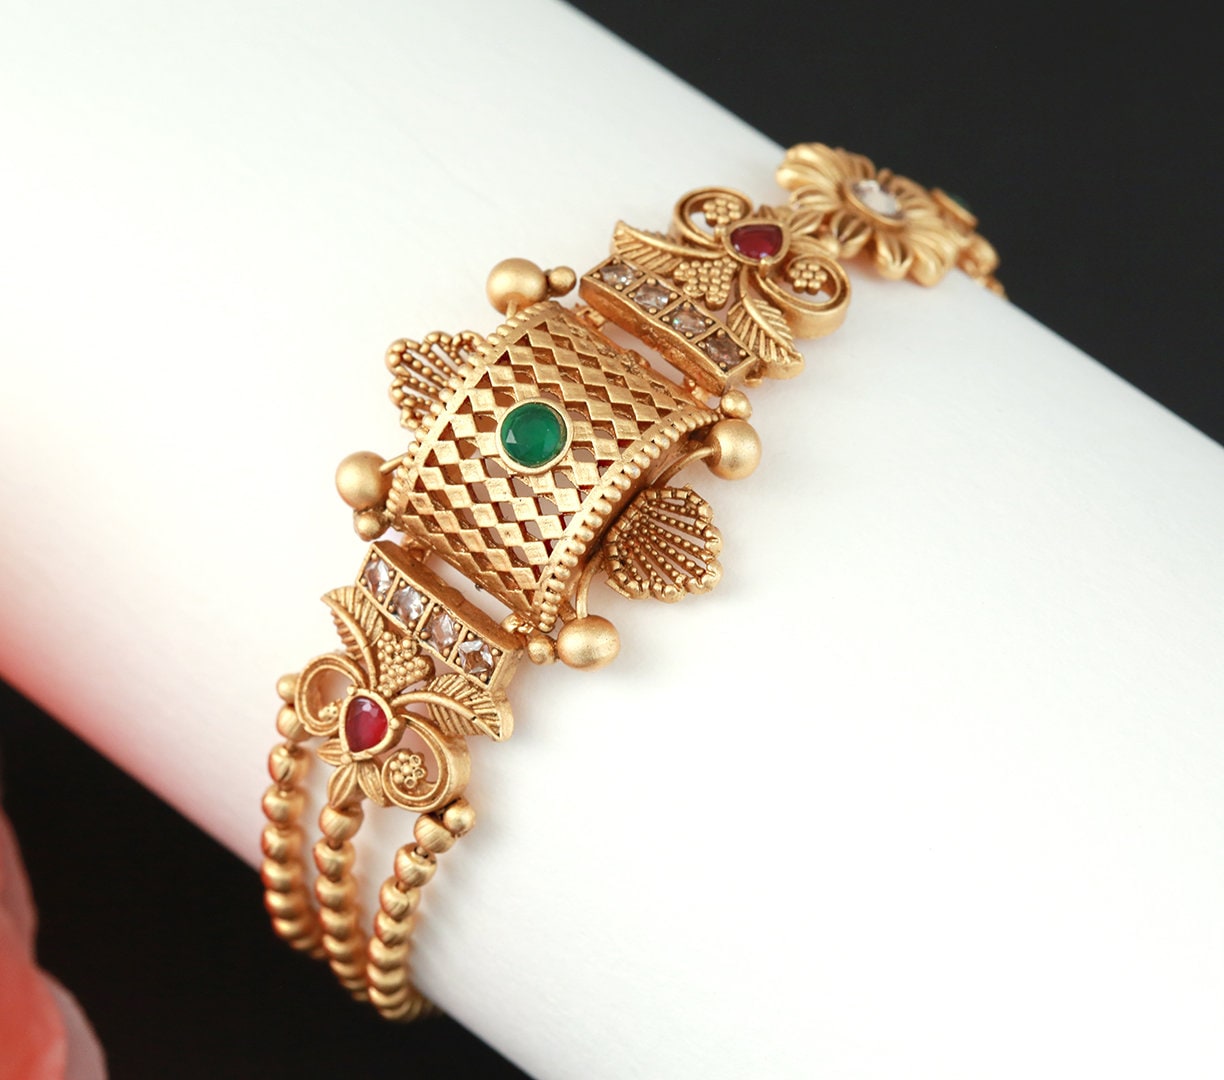 Indian bracelets Gold | bracelets for women |latest Gold bracelet designs | women's bracelets antique gold | gold plated adjustable bracelet